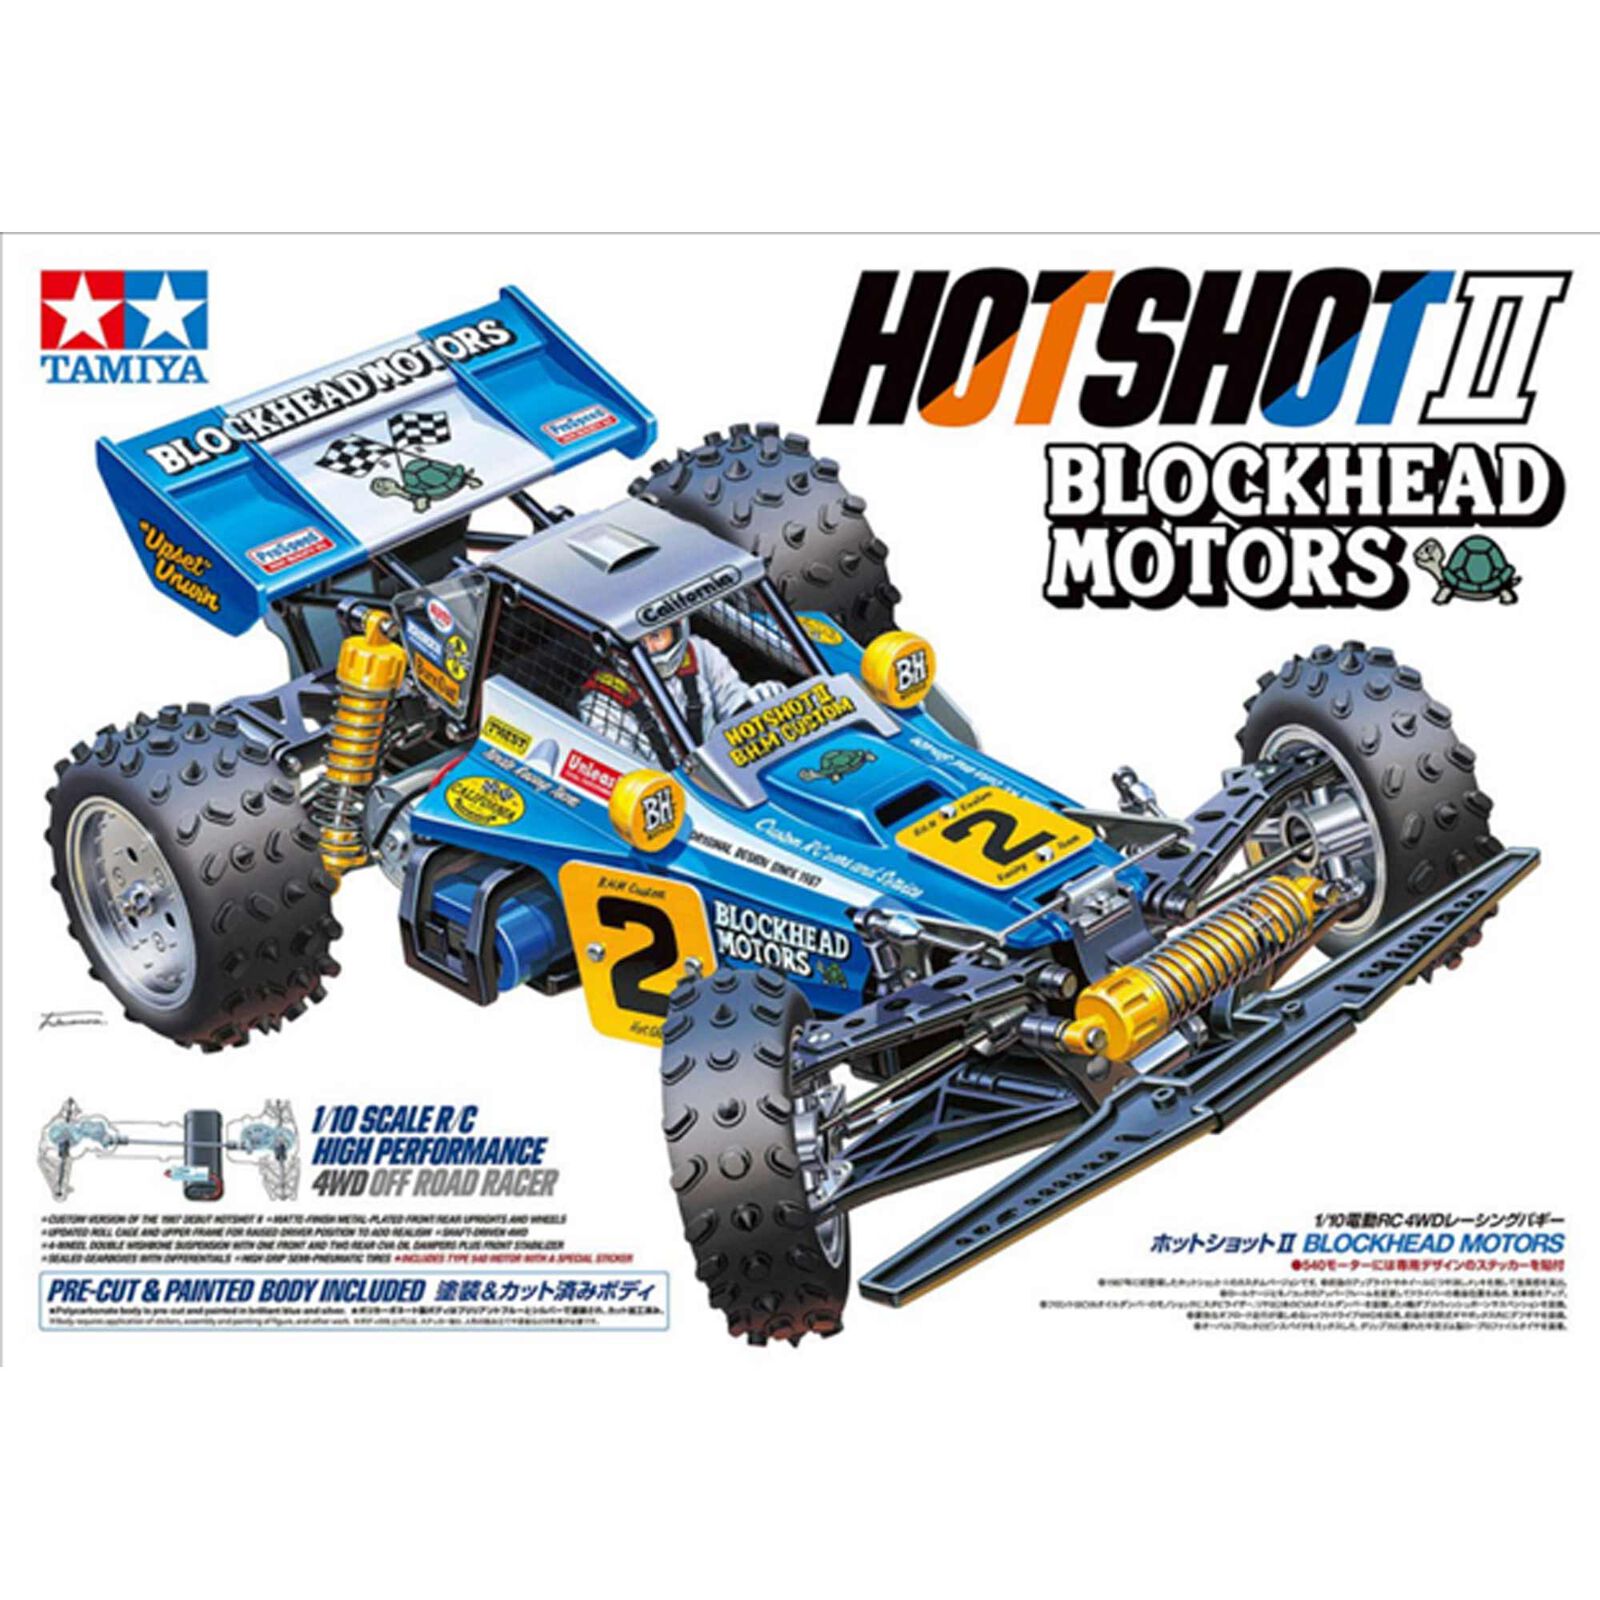 1/10 Hotshot II Blockhead Motors 4x4 Off-Road Buggy Kit